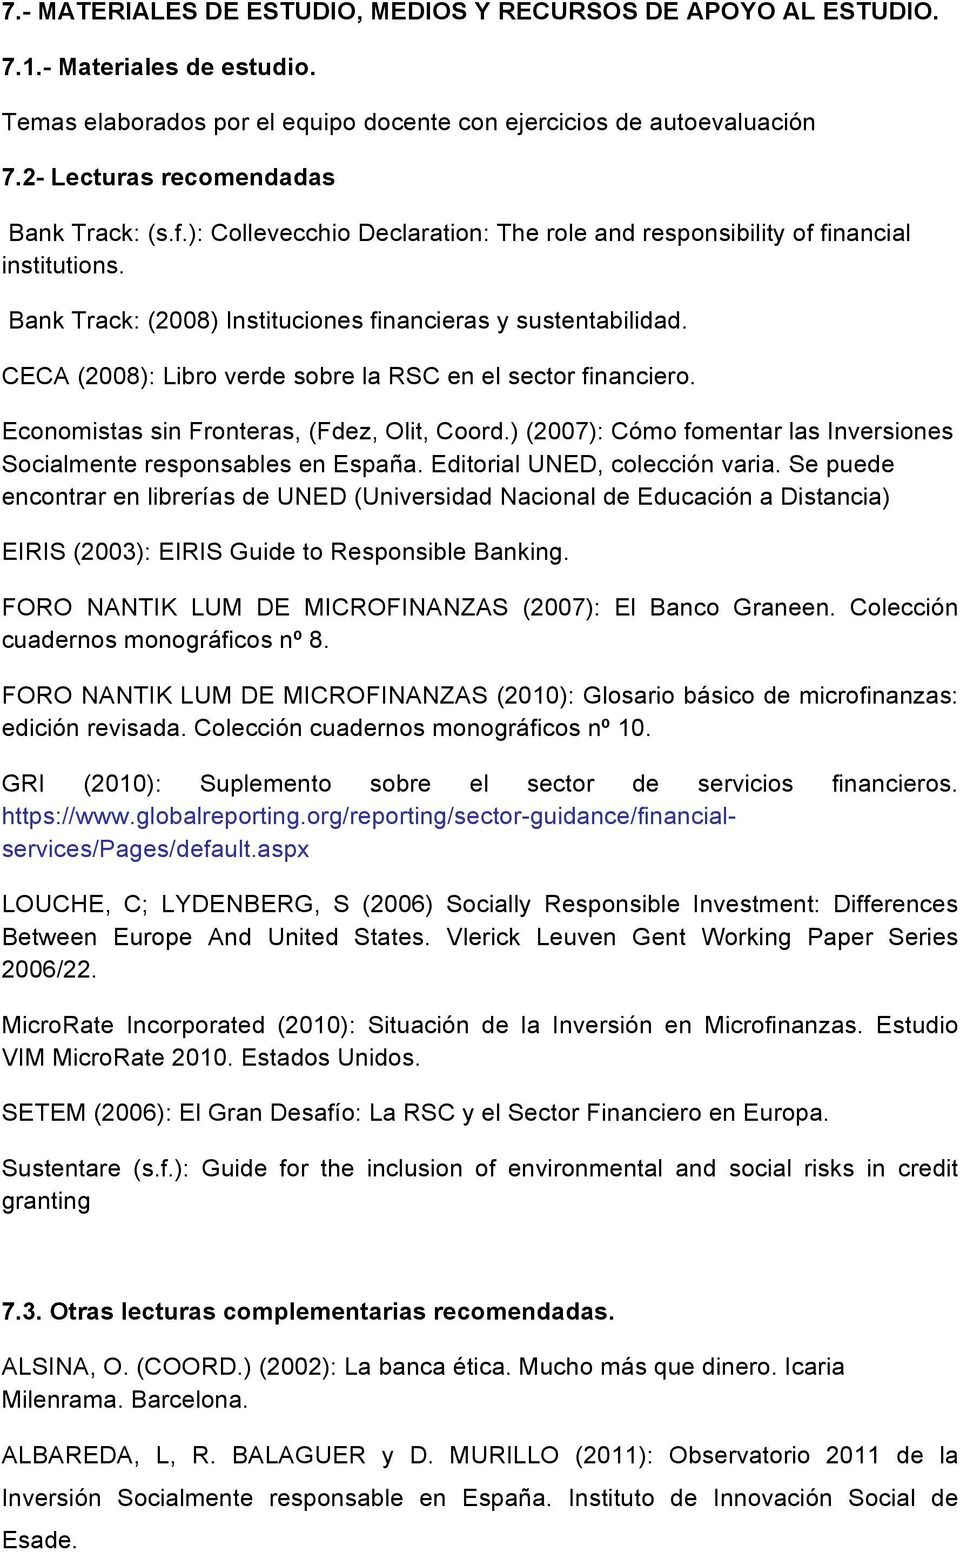 CECA (2008): Libro verde sobre la RSC en el sector financiero. Economistas sin Fronteras, (Fdez, Olit, Coord.) (2007): Cómo fomentar las Inversiones Socialmente responsables en España.